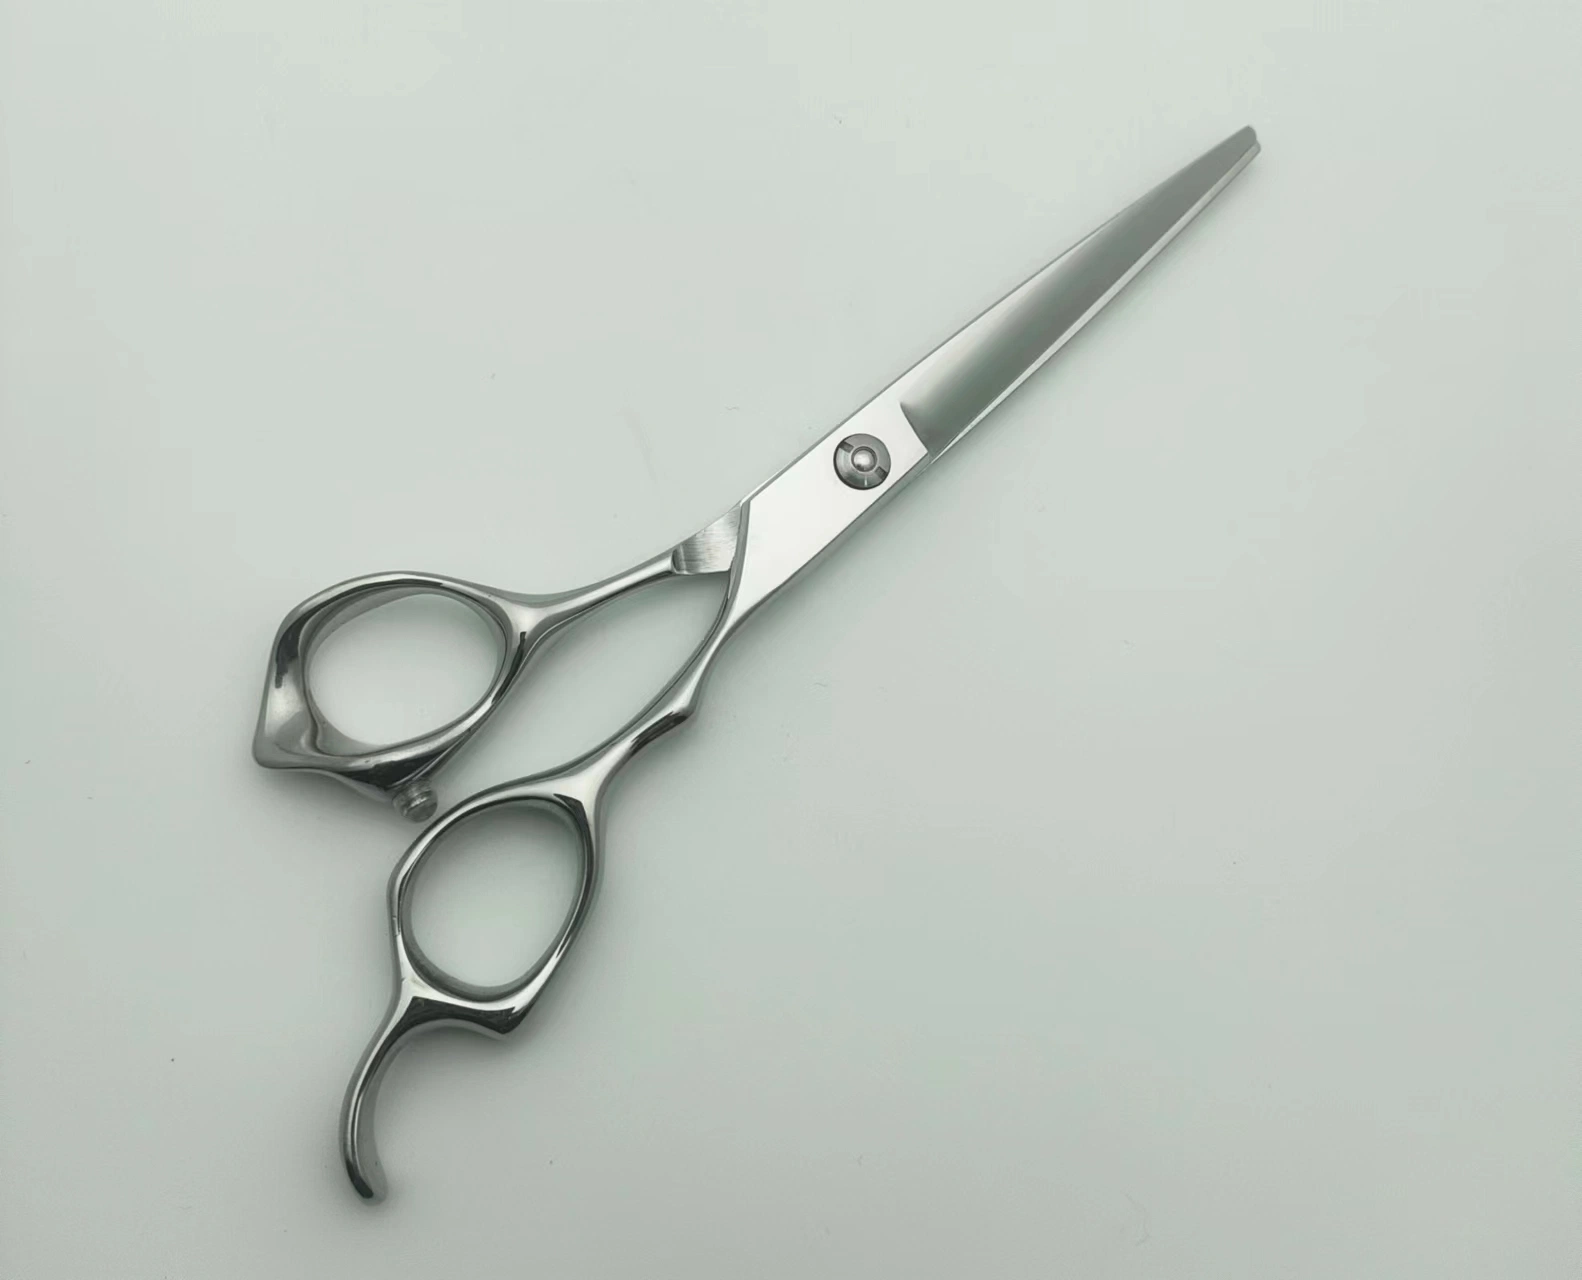 6 "Ножницы волос парикмахерский салон высокого качества ножниц волос в домашних условиях плоский ножниц разрежьте